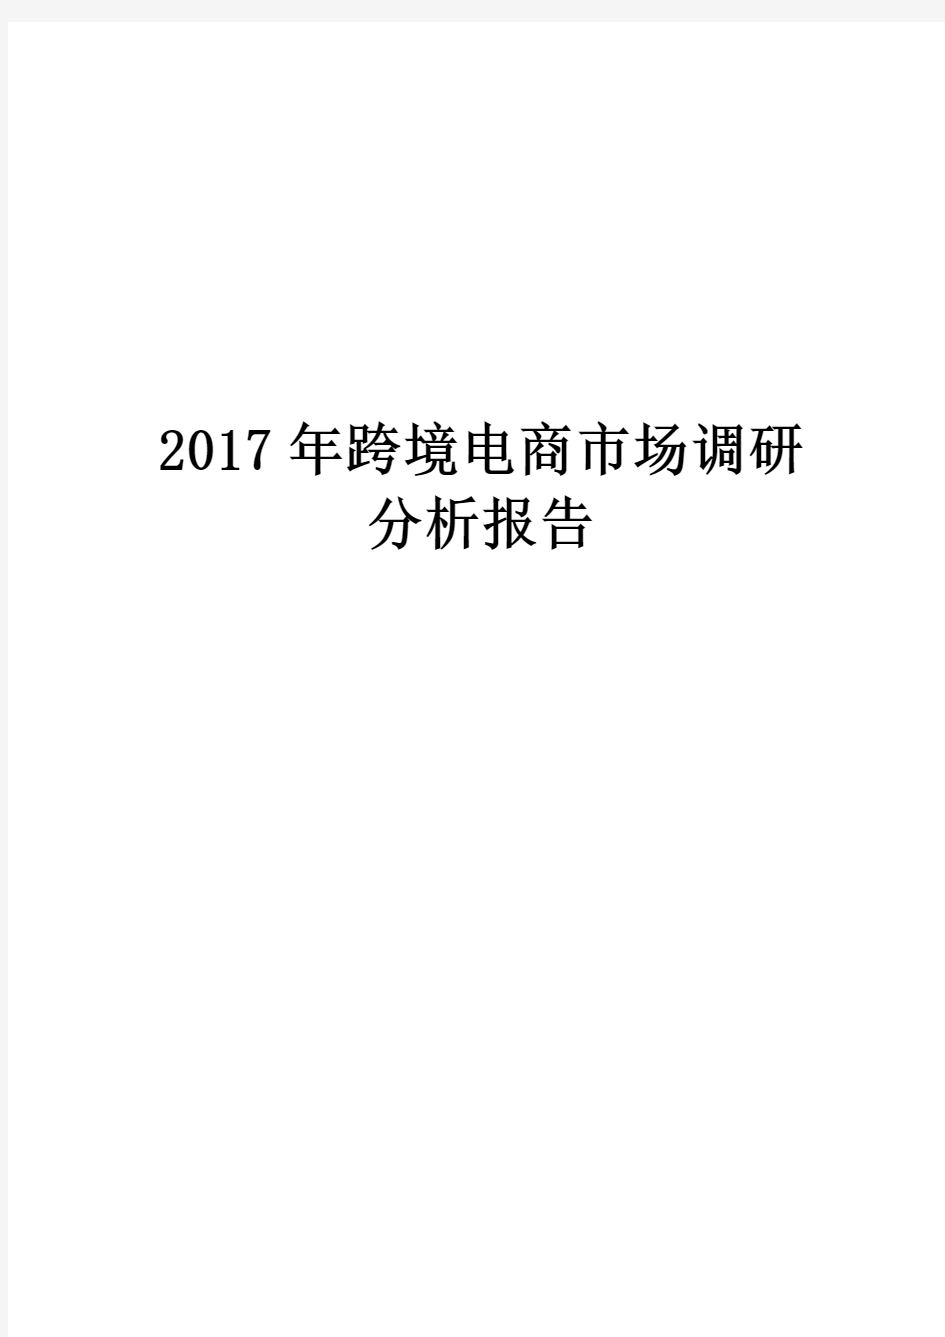 2017年跨境电商市场调研分析报告